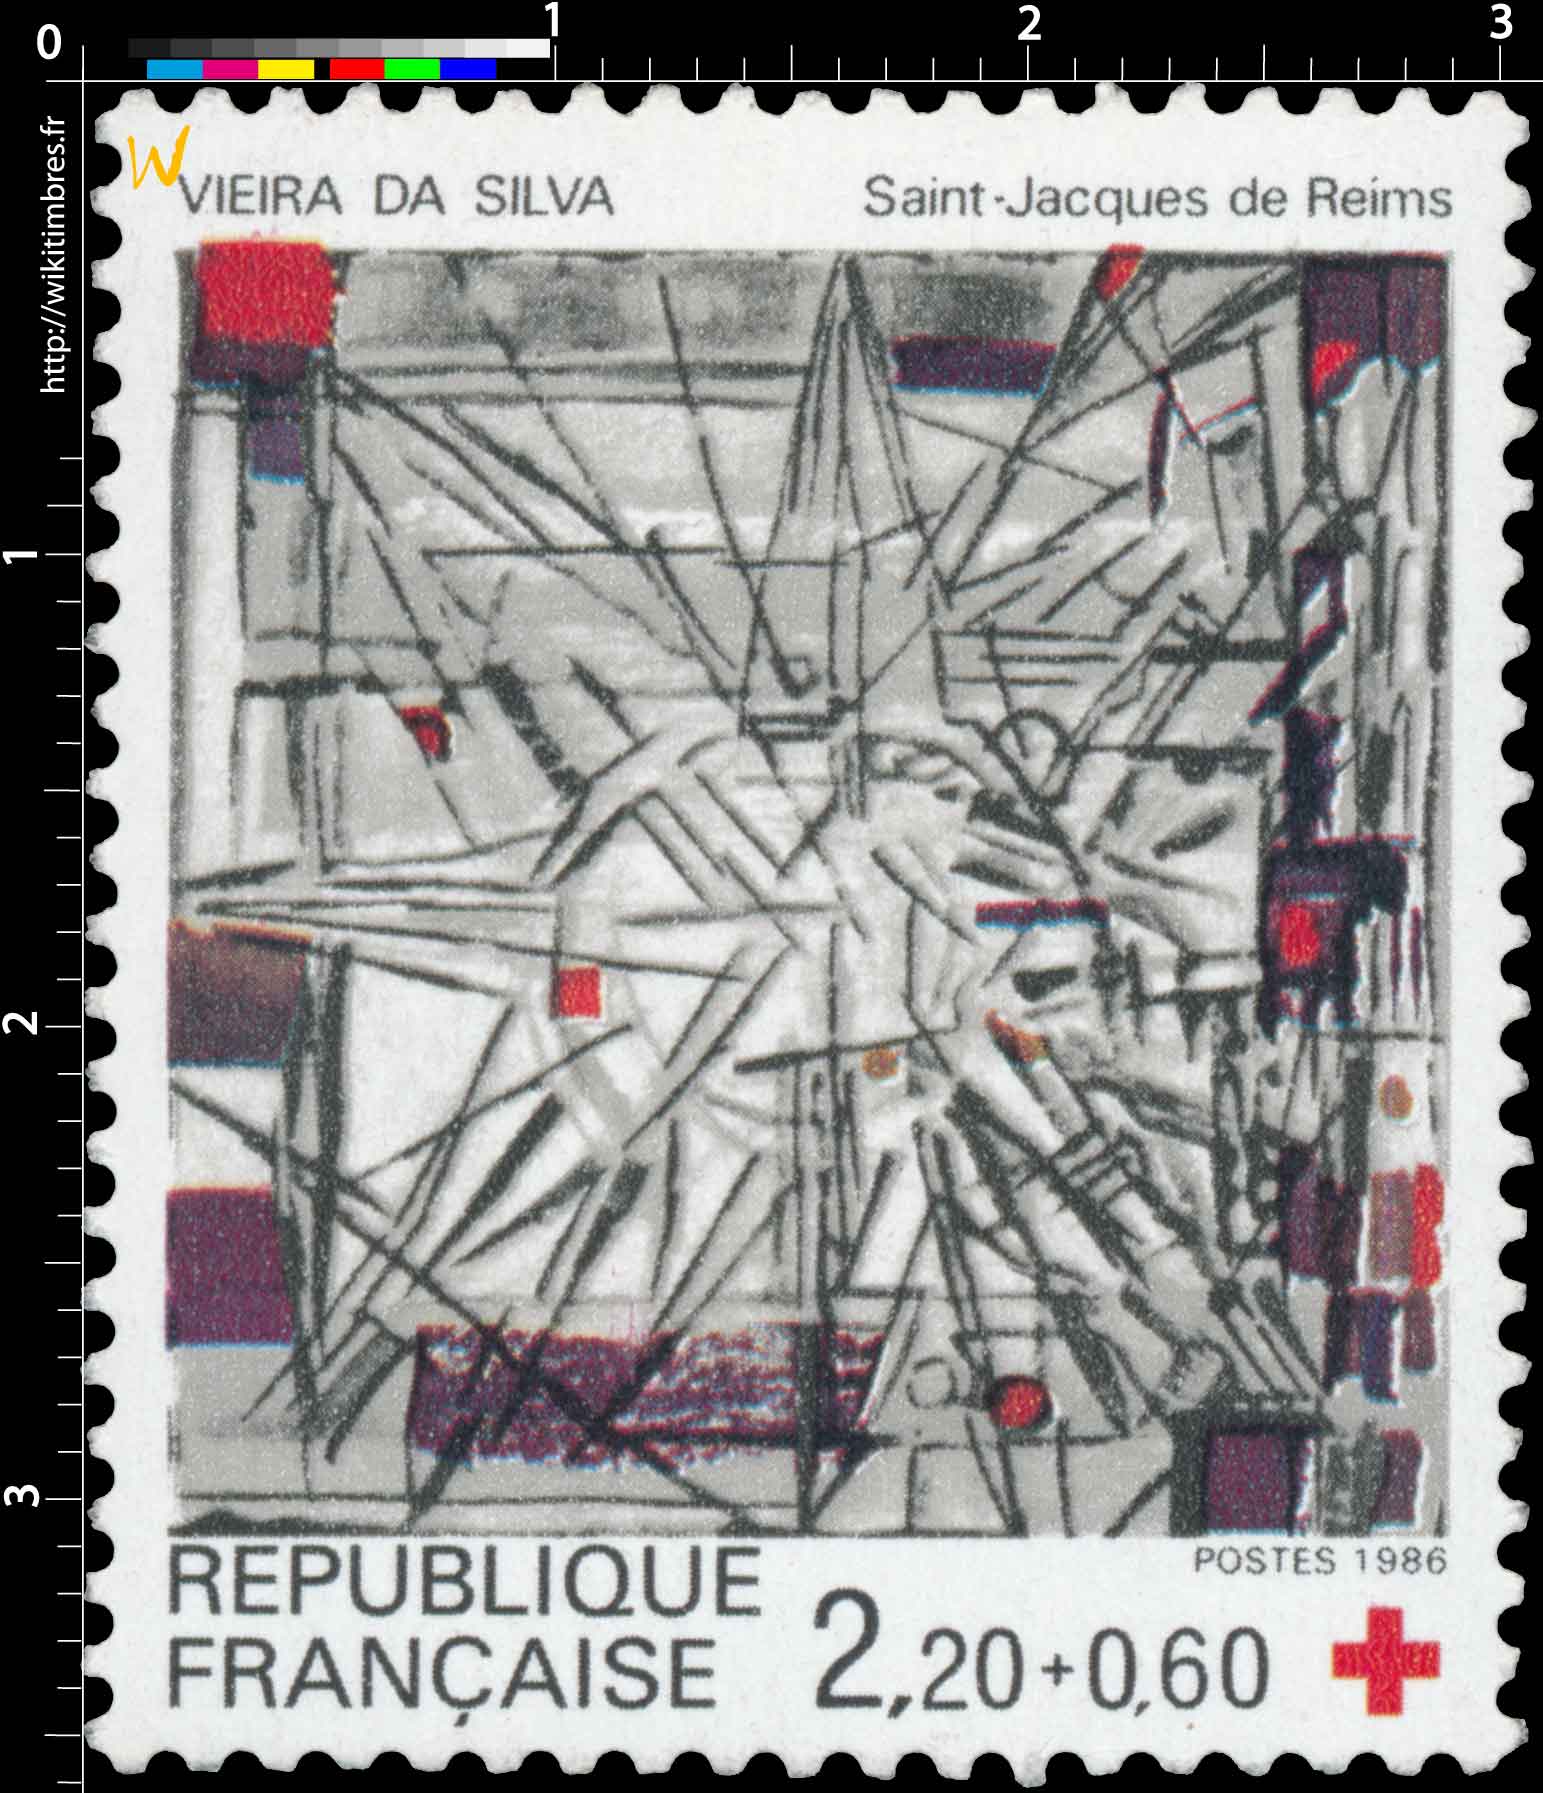 1986 VIEIRA DA SILVA Saint-Jacques de Reims